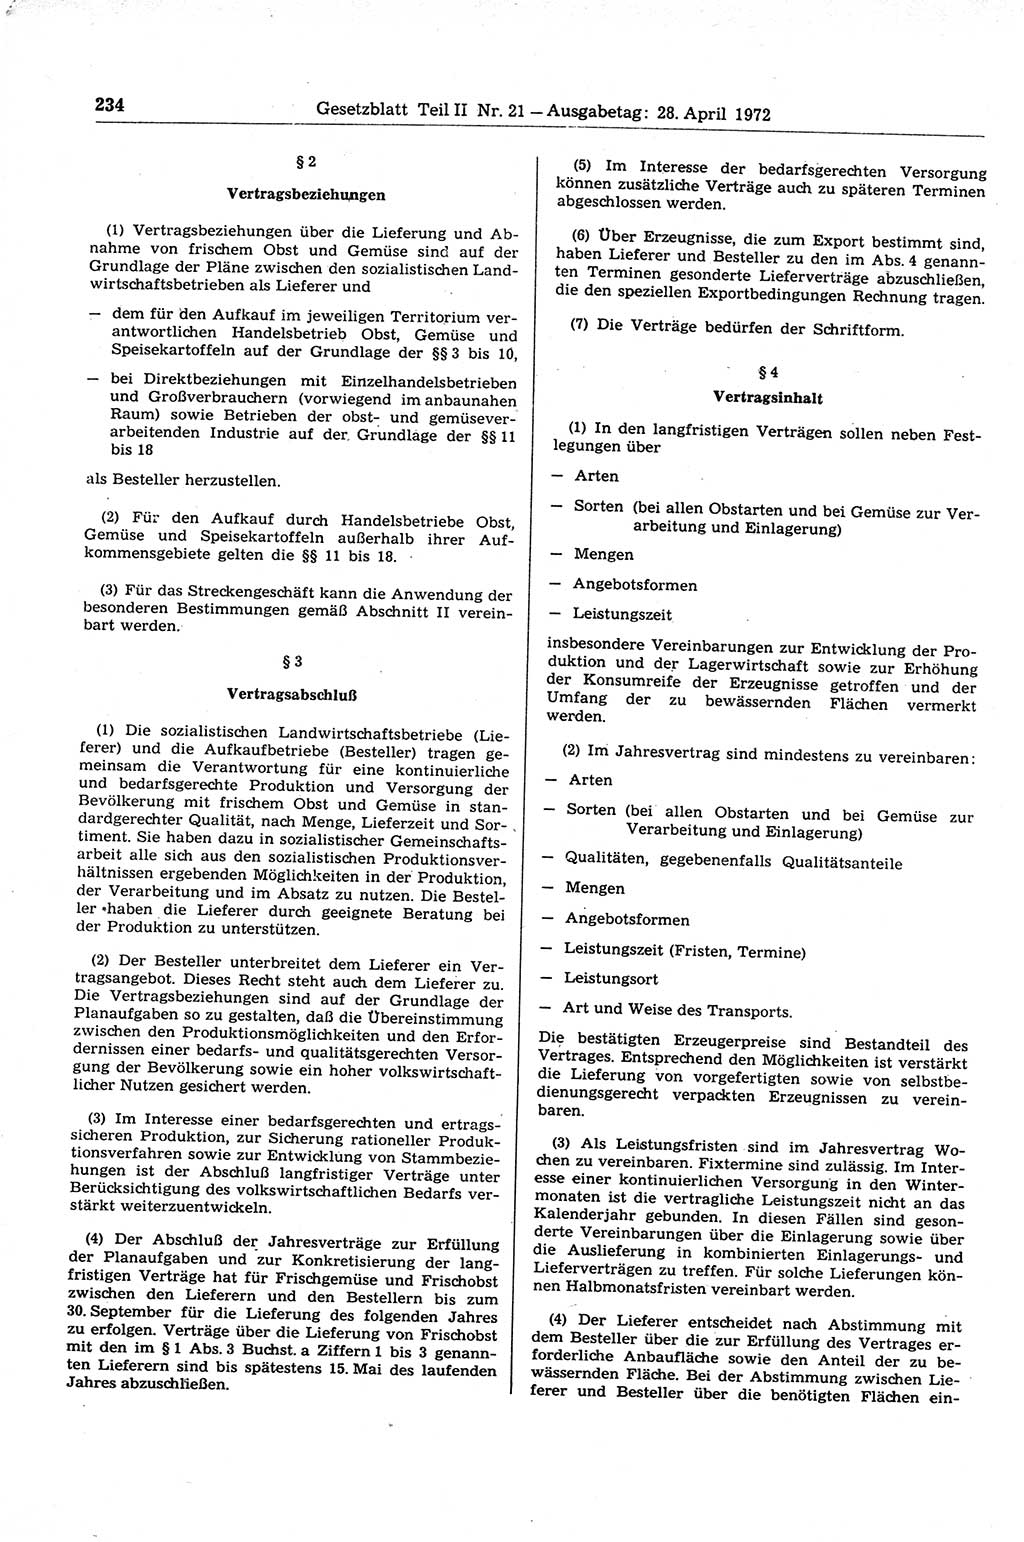 Gesetzblatt (GBl.) der Deutschen Demokratischen Republik (DDR) Teil ⅠⅠ 1972, Seite 234 (GBl. DDR ⅠⅠ 1972, S. 234)